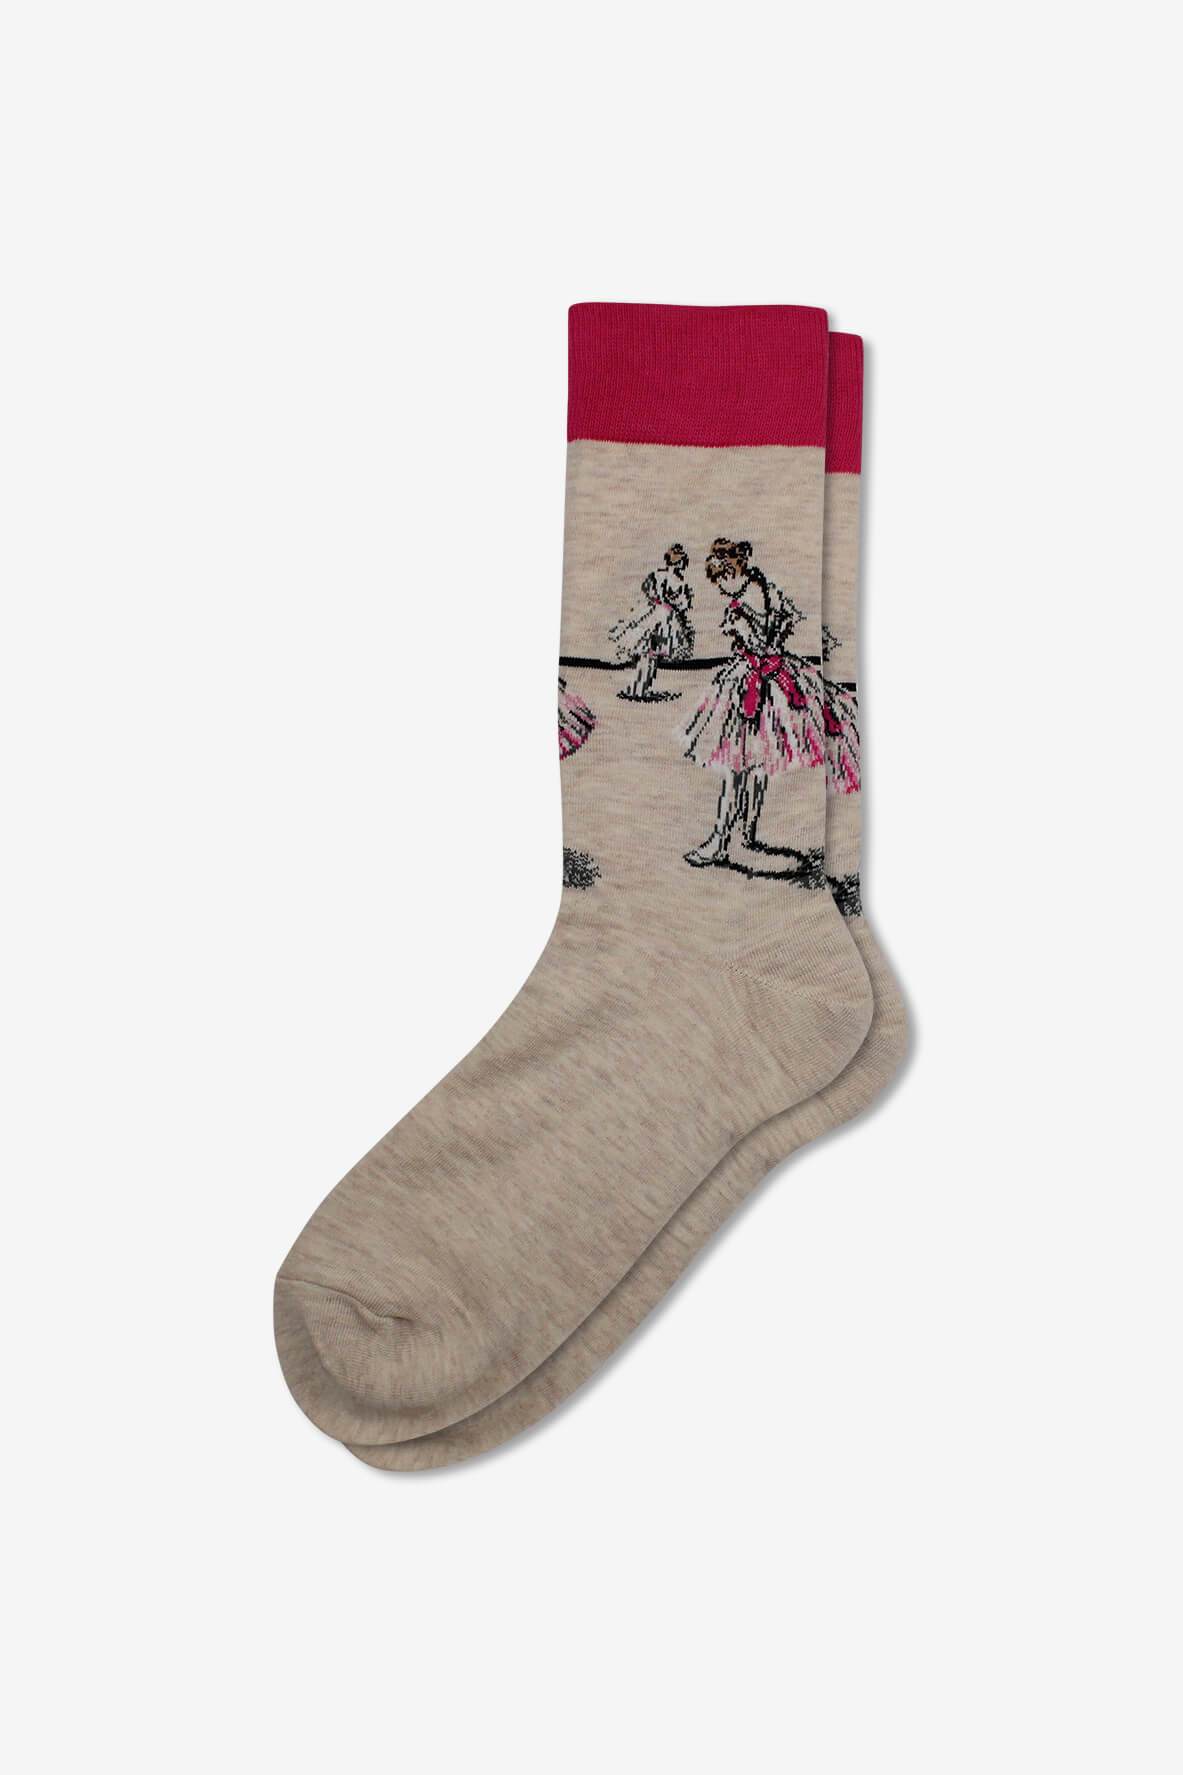 Socks IMG_5318, socks, GoTie